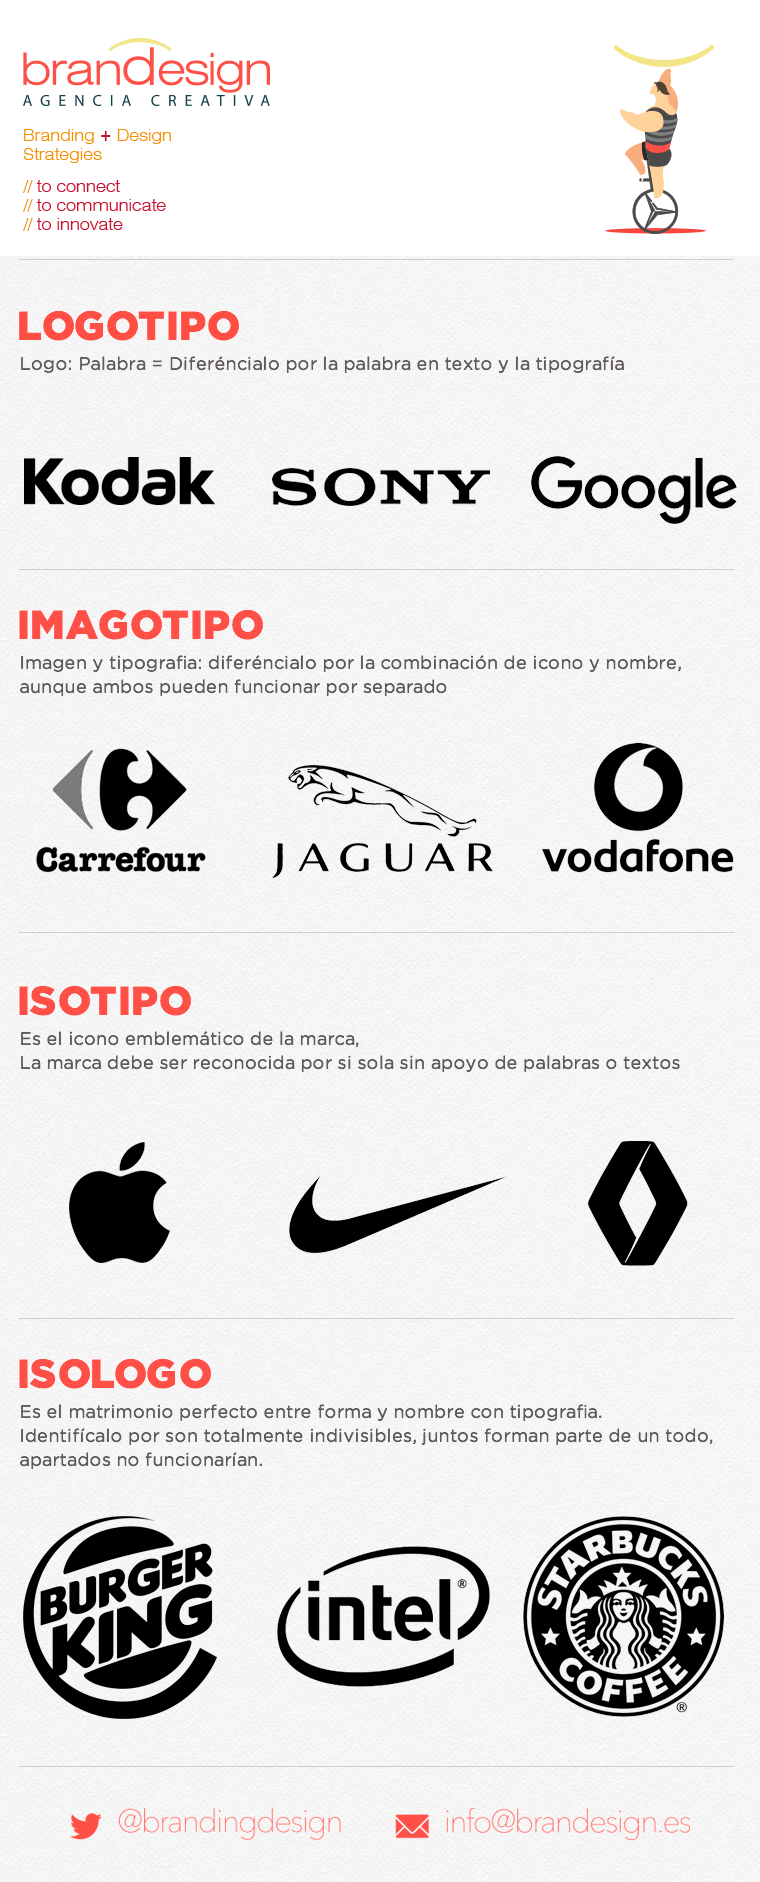 Entre Logo - Imagen corporativa: Logotipo, Logo, Imagopitpo, isologo, isótipo o